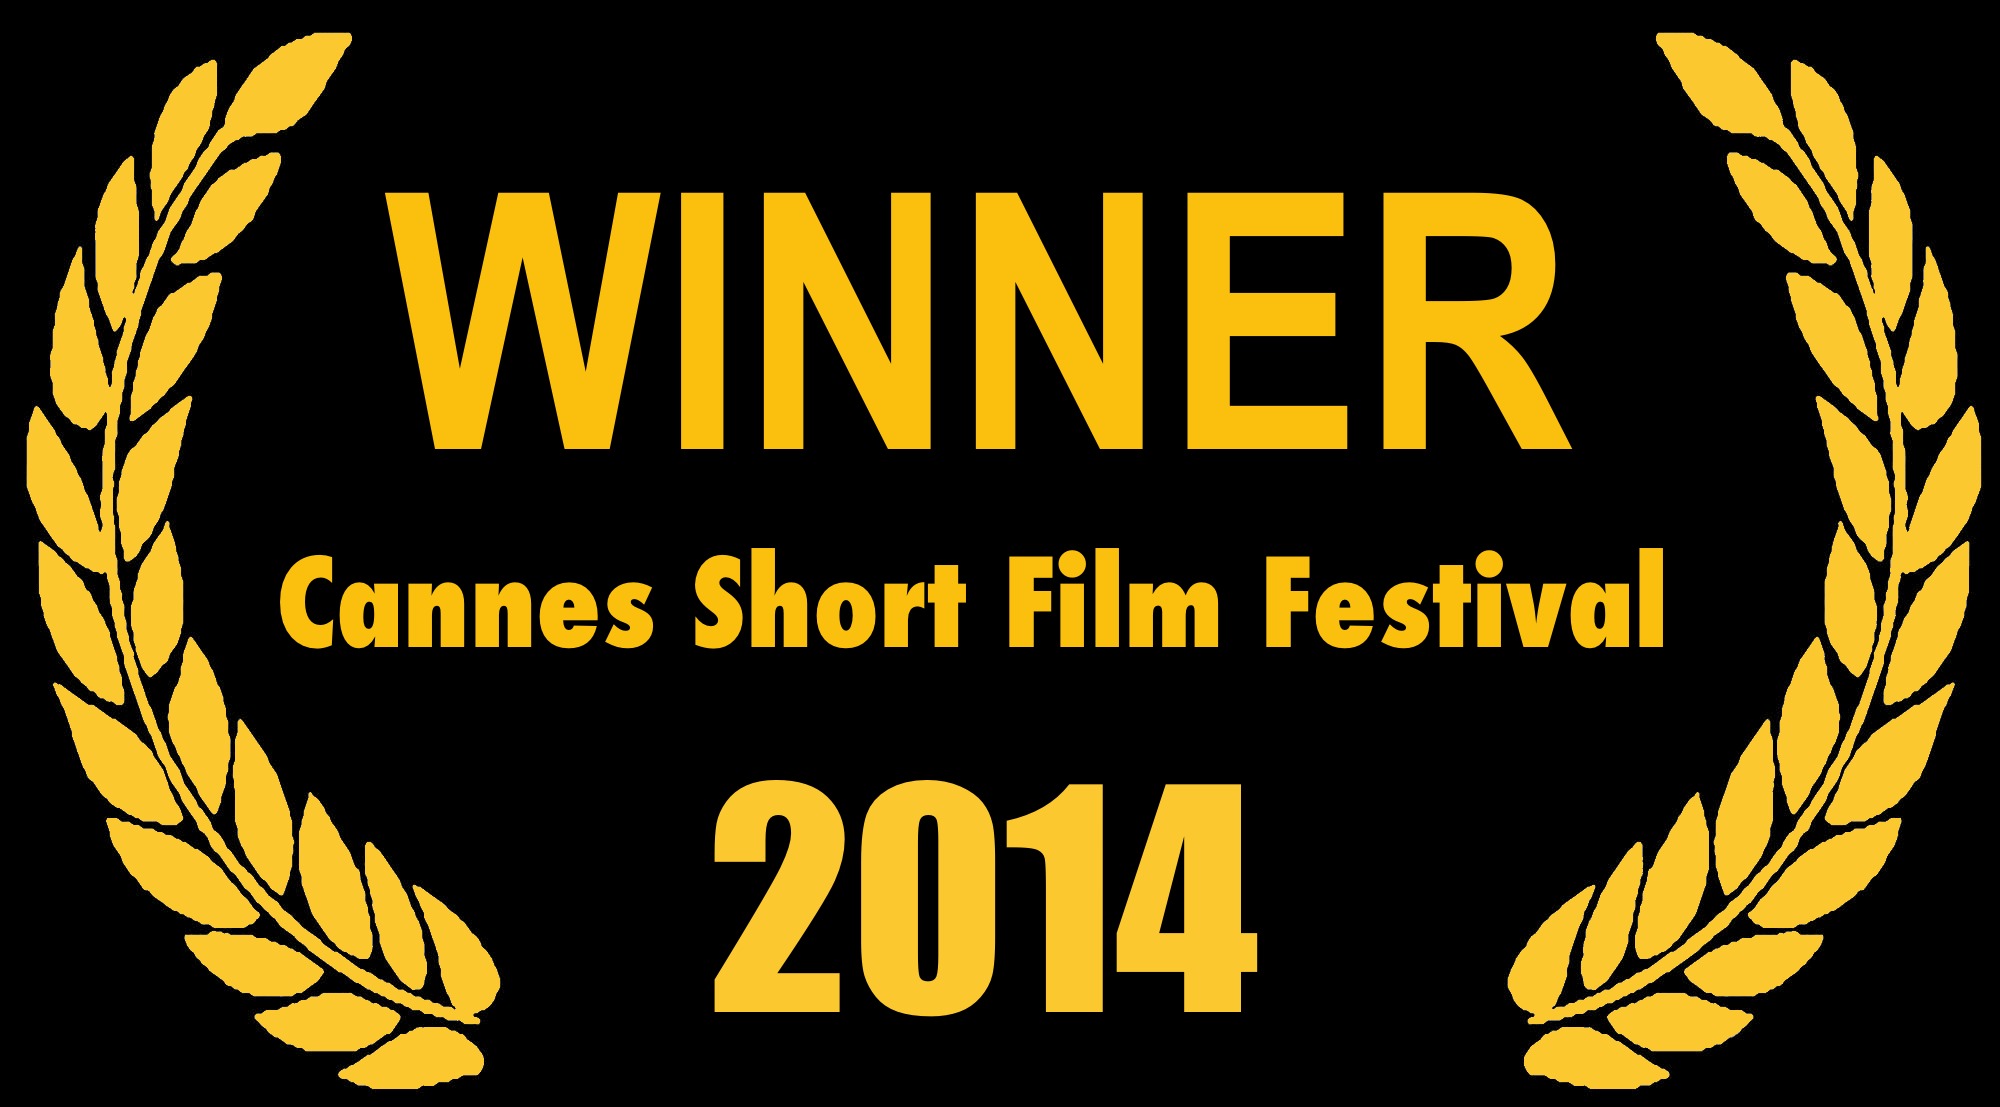 Best Short Film Winner 